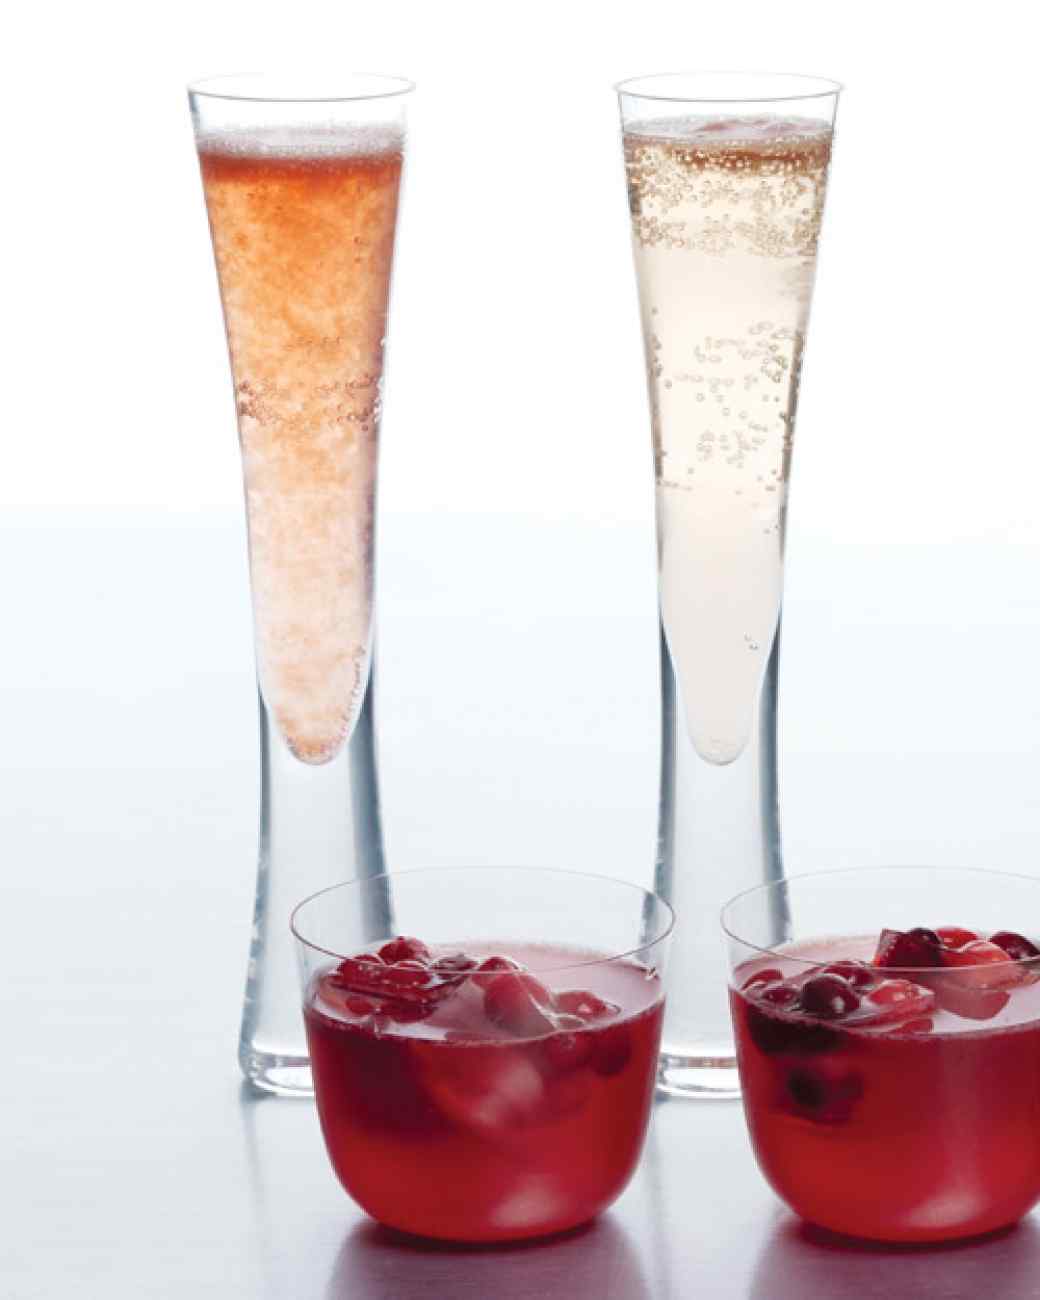 Sorbet and Champagne Cocktail (cocktail champagne + kem sorbet): Sorbet là kem không béo với thành phần chủ đạo là hoa quả, nước, đường và mật ong… Nếu bạn muốn đón năm mới với tâm trạng thật vui vẻ thì sorbet champagne cocktail là sự lựa chọn hoàn hảo. Công thức: 1 muỗng cà phê kem sorbet (dâu, chanh dây hoặc mâm xôi...) + champagne ướp lạnh hoặc Prosecco, khuấy đều trước khi uống.